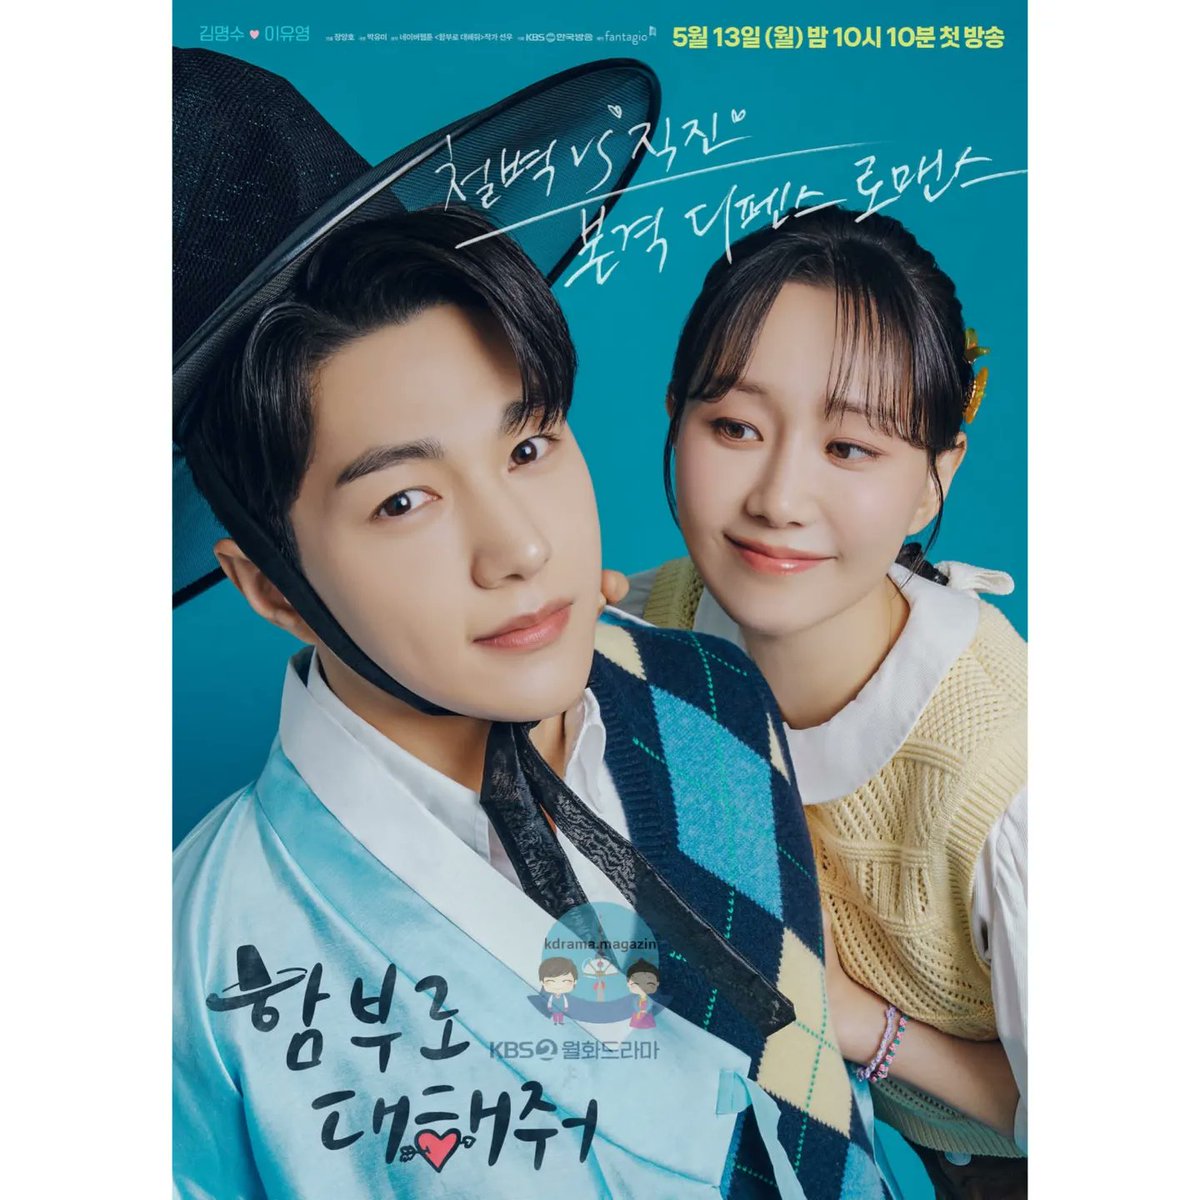 #DareToLoveMe Draması İçin Poster Yayınlandı.

🗓13 Mayıs'ta yayınlanacak.

#KimMyungSoo #LeeYooYoung